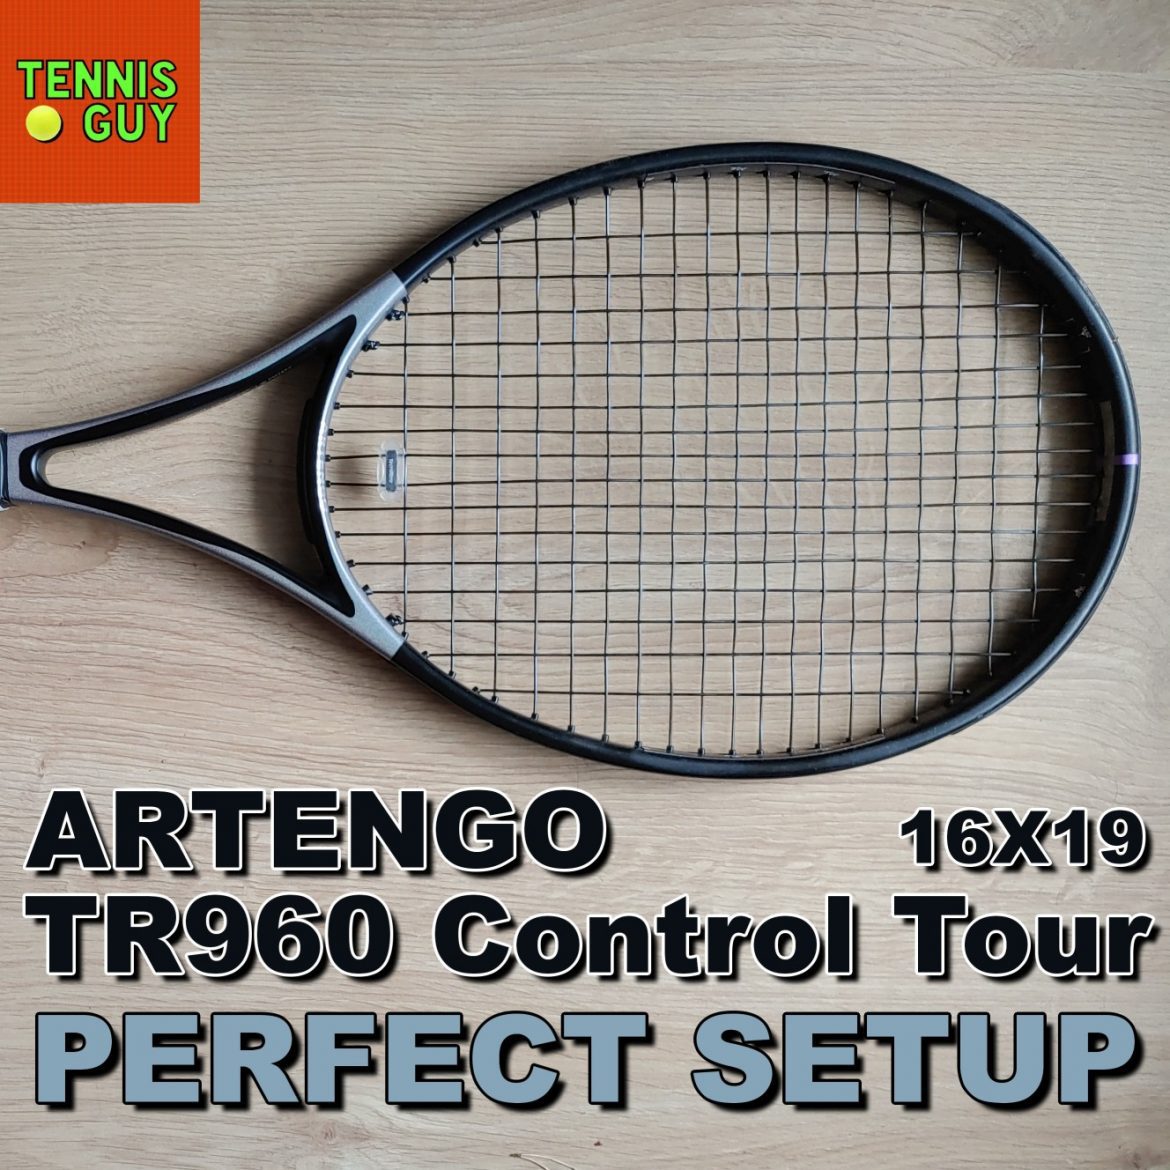 ARTENGO TR960 CONTROL TOUR 16×19 – My Perfect Setup